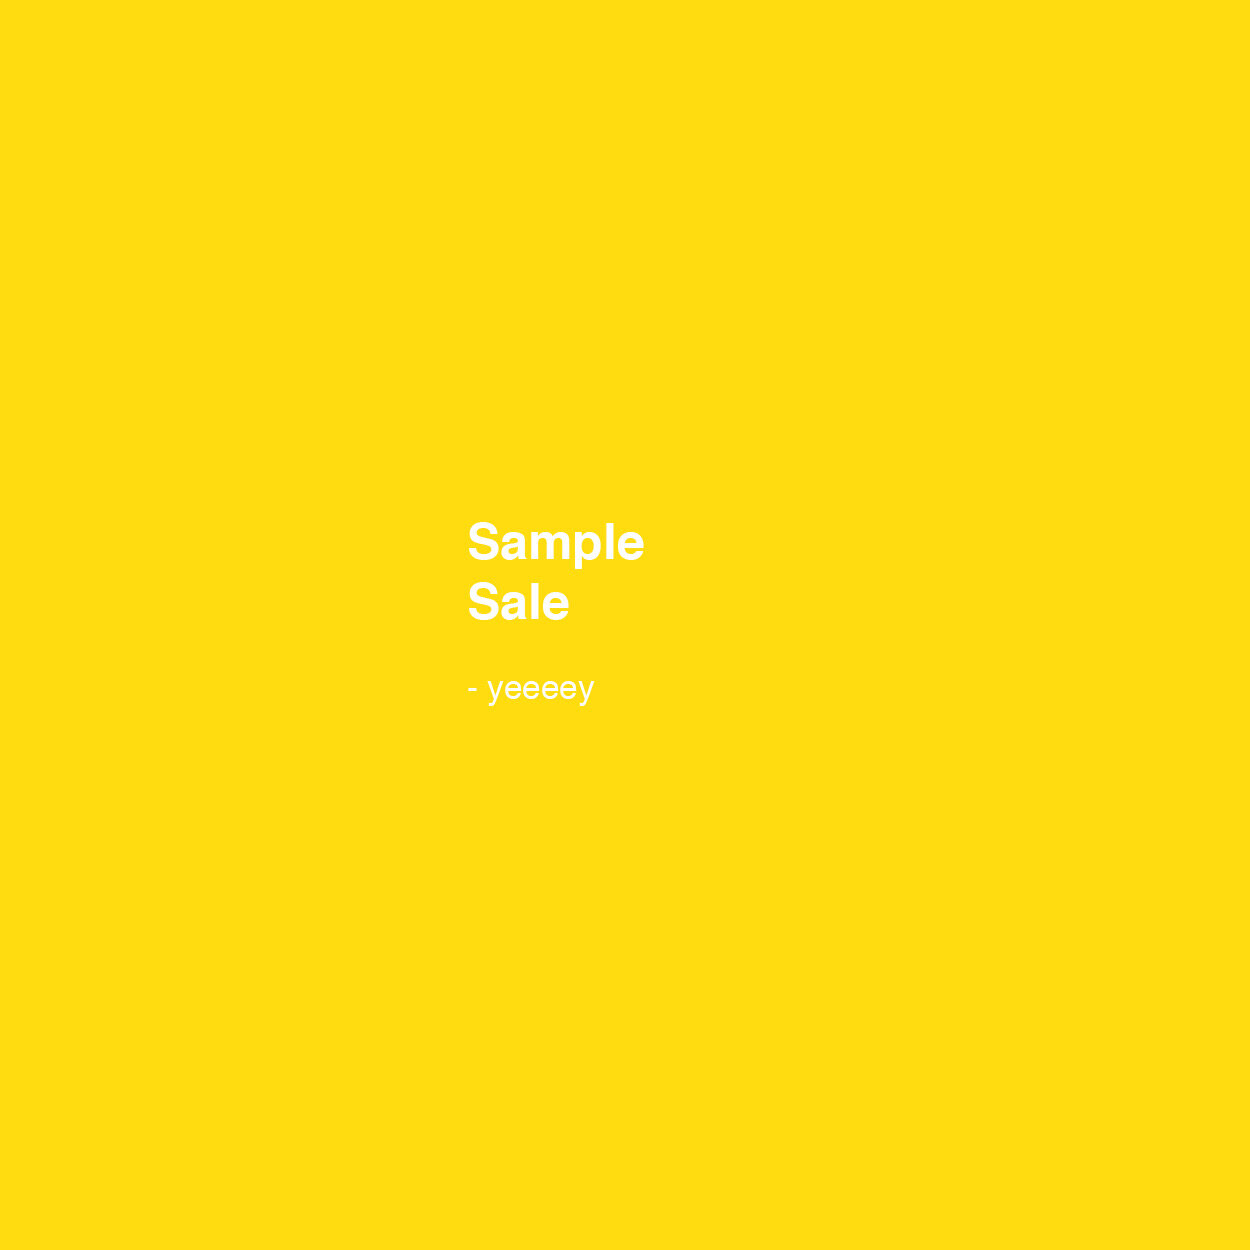 kvadrat_sample sale.jpg